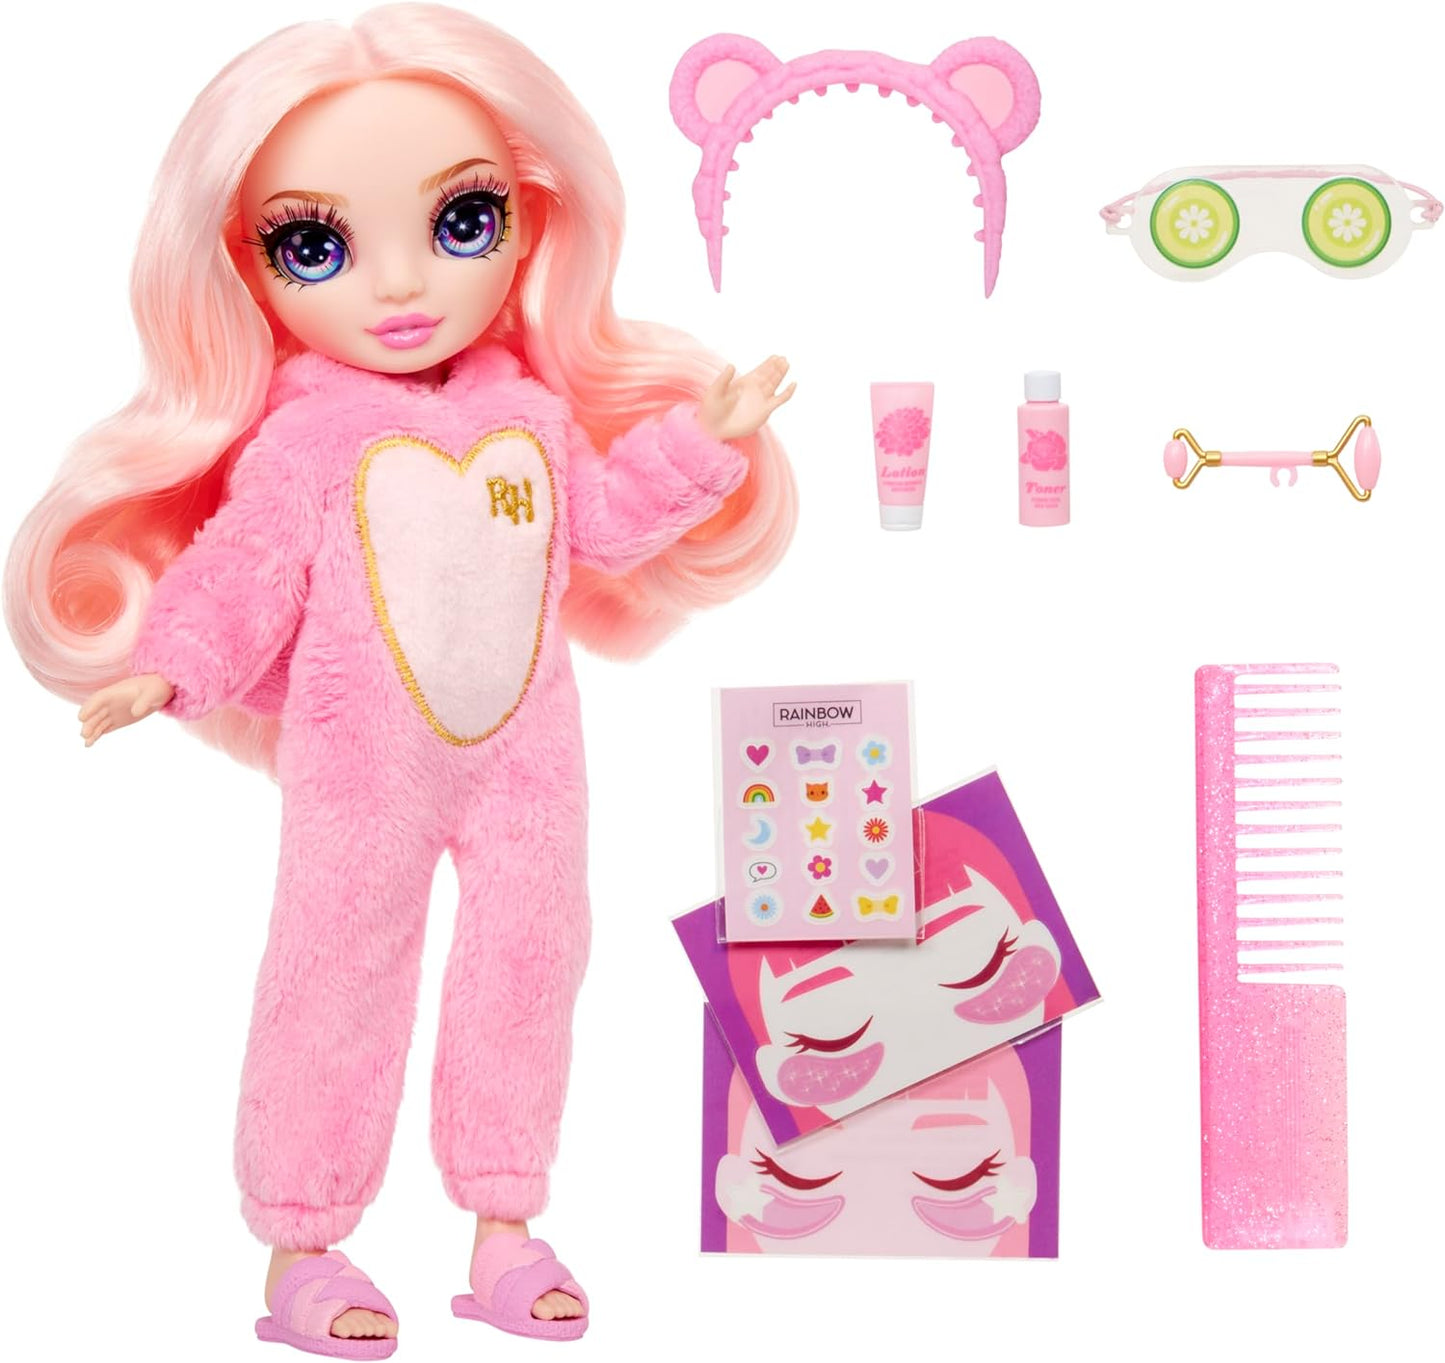 Rainbow High Junior High PJ Party - Bella (rosa) - Boneca articulada de 22 cm com macacão macio, chinelos e acessórios para brincar - Brinquedo infantil - Ótimo para idades de 4 a 12 anos